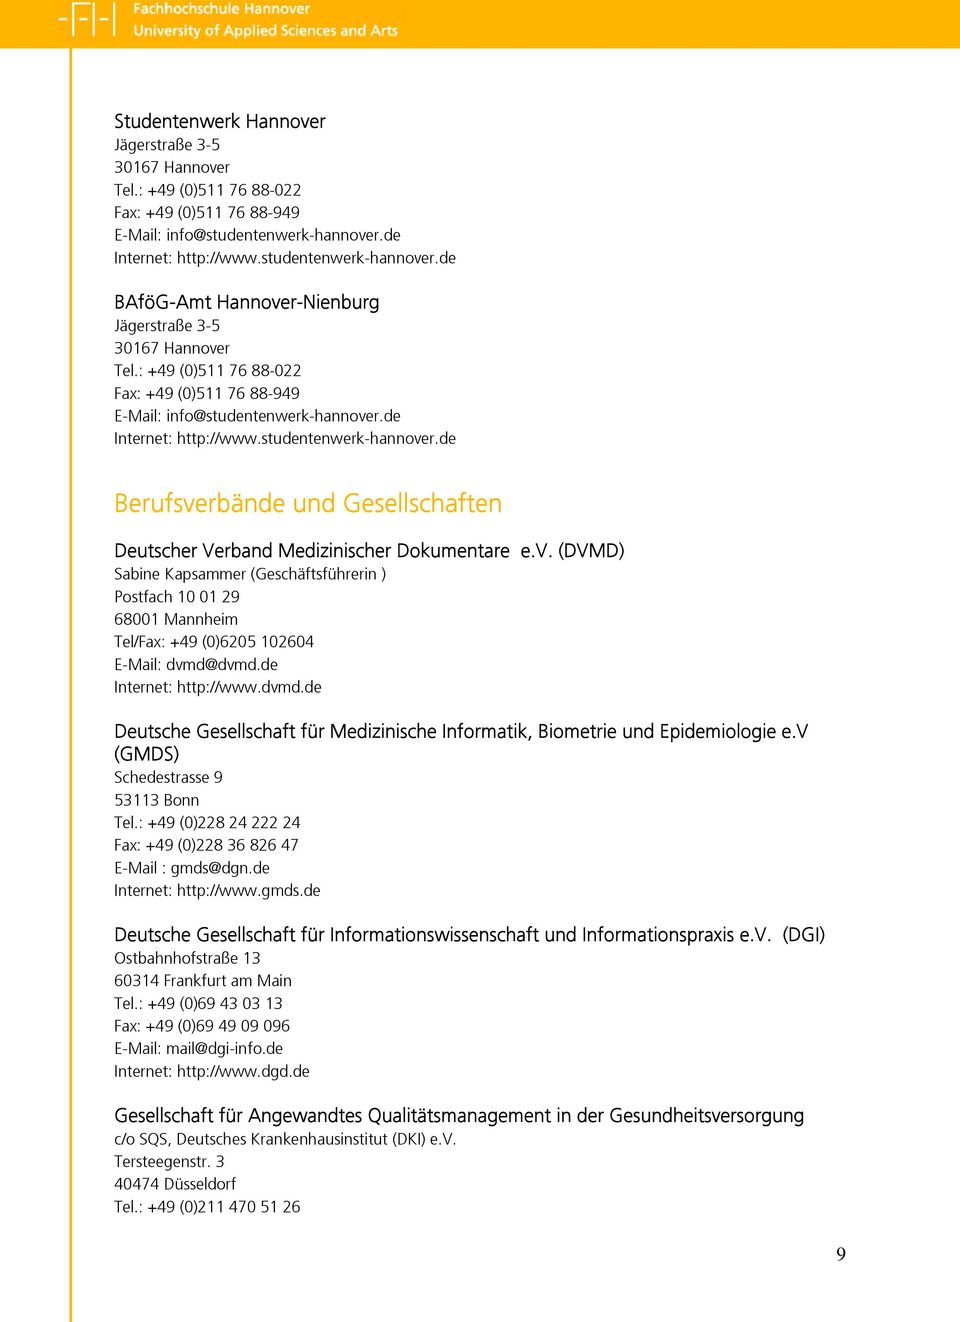 de Internet: http://www.studentenwerk-hannover.de Berufsverbände und Gesellschaften Deutscher Verband Medizinischer Dokumentare e.v. (DVMD) Sabine Kapsammer (Geschäftsführerin ) Postfach 10 01 29 68001 Mannheim Tel/Fax: +49 (0)6205 102604 E-Mail: dvmd@dvmd.